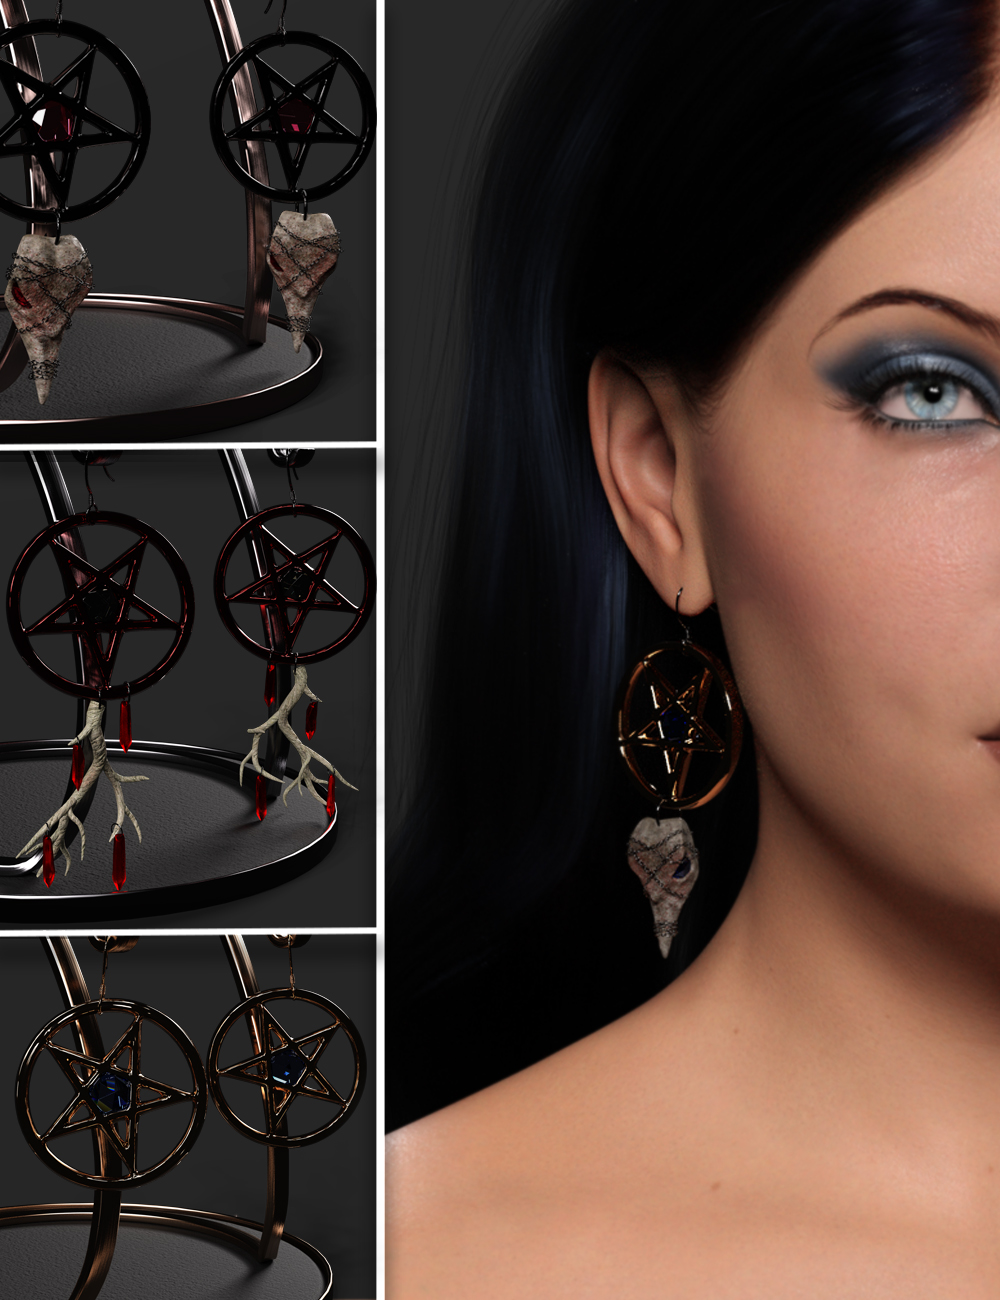 TM Hexed Earrings for Genesis 9 by: TwiztedMetal, 3D Models by Daz 3D